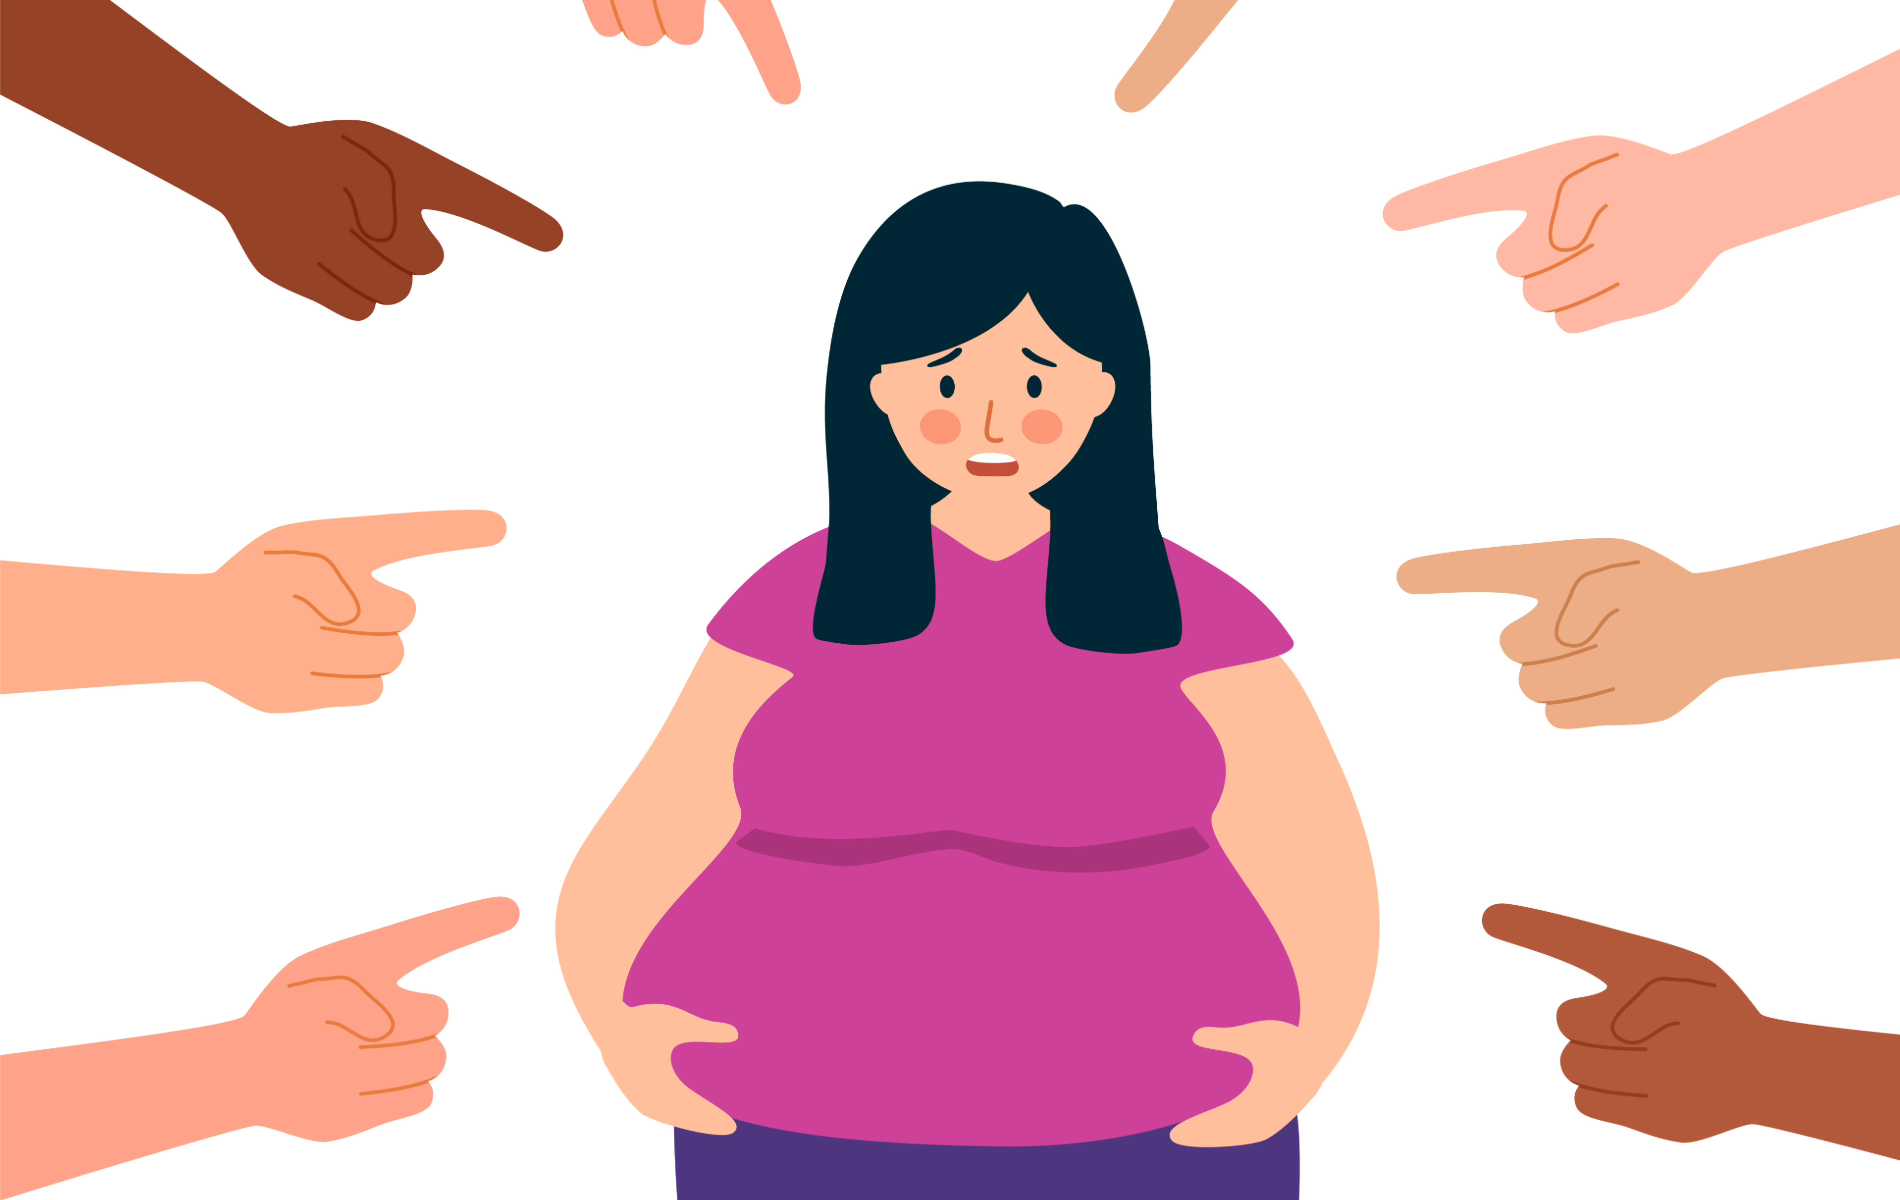 Menschen mit Adipositas werden in unserer Gesellschaft oft selbst für ihr Schicksal verantwortlich gemacht. Unsere Zeichnung zeigt eine Frau mit Übergewicht, auf die viele verschiedene Finger gerichtet sind.